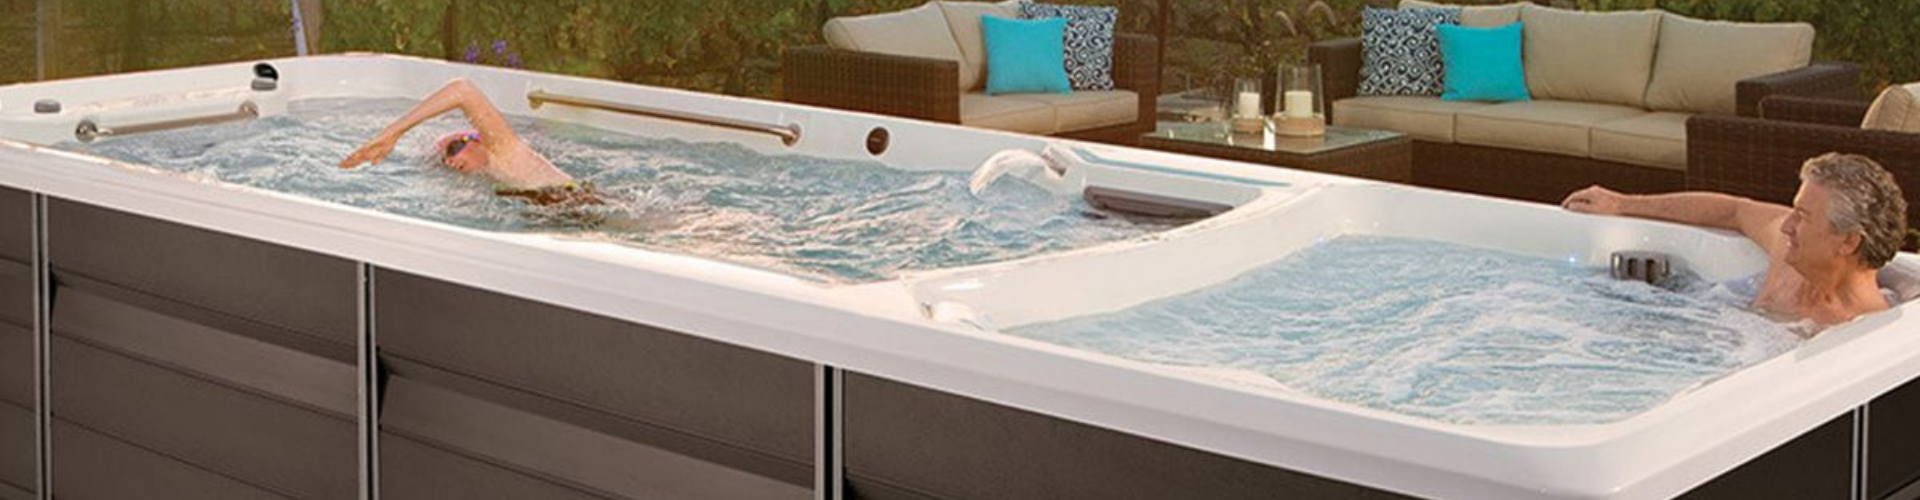 swim spa pool plus hot tub